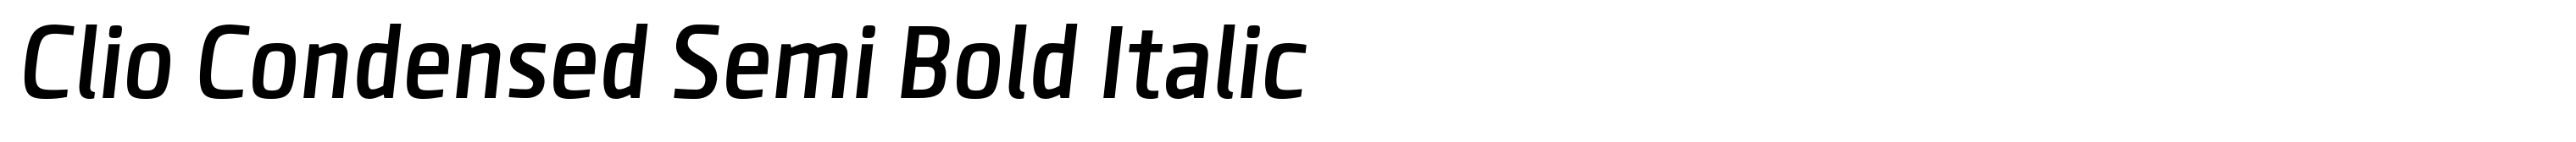 Clio Condensed Semi Bold Italic